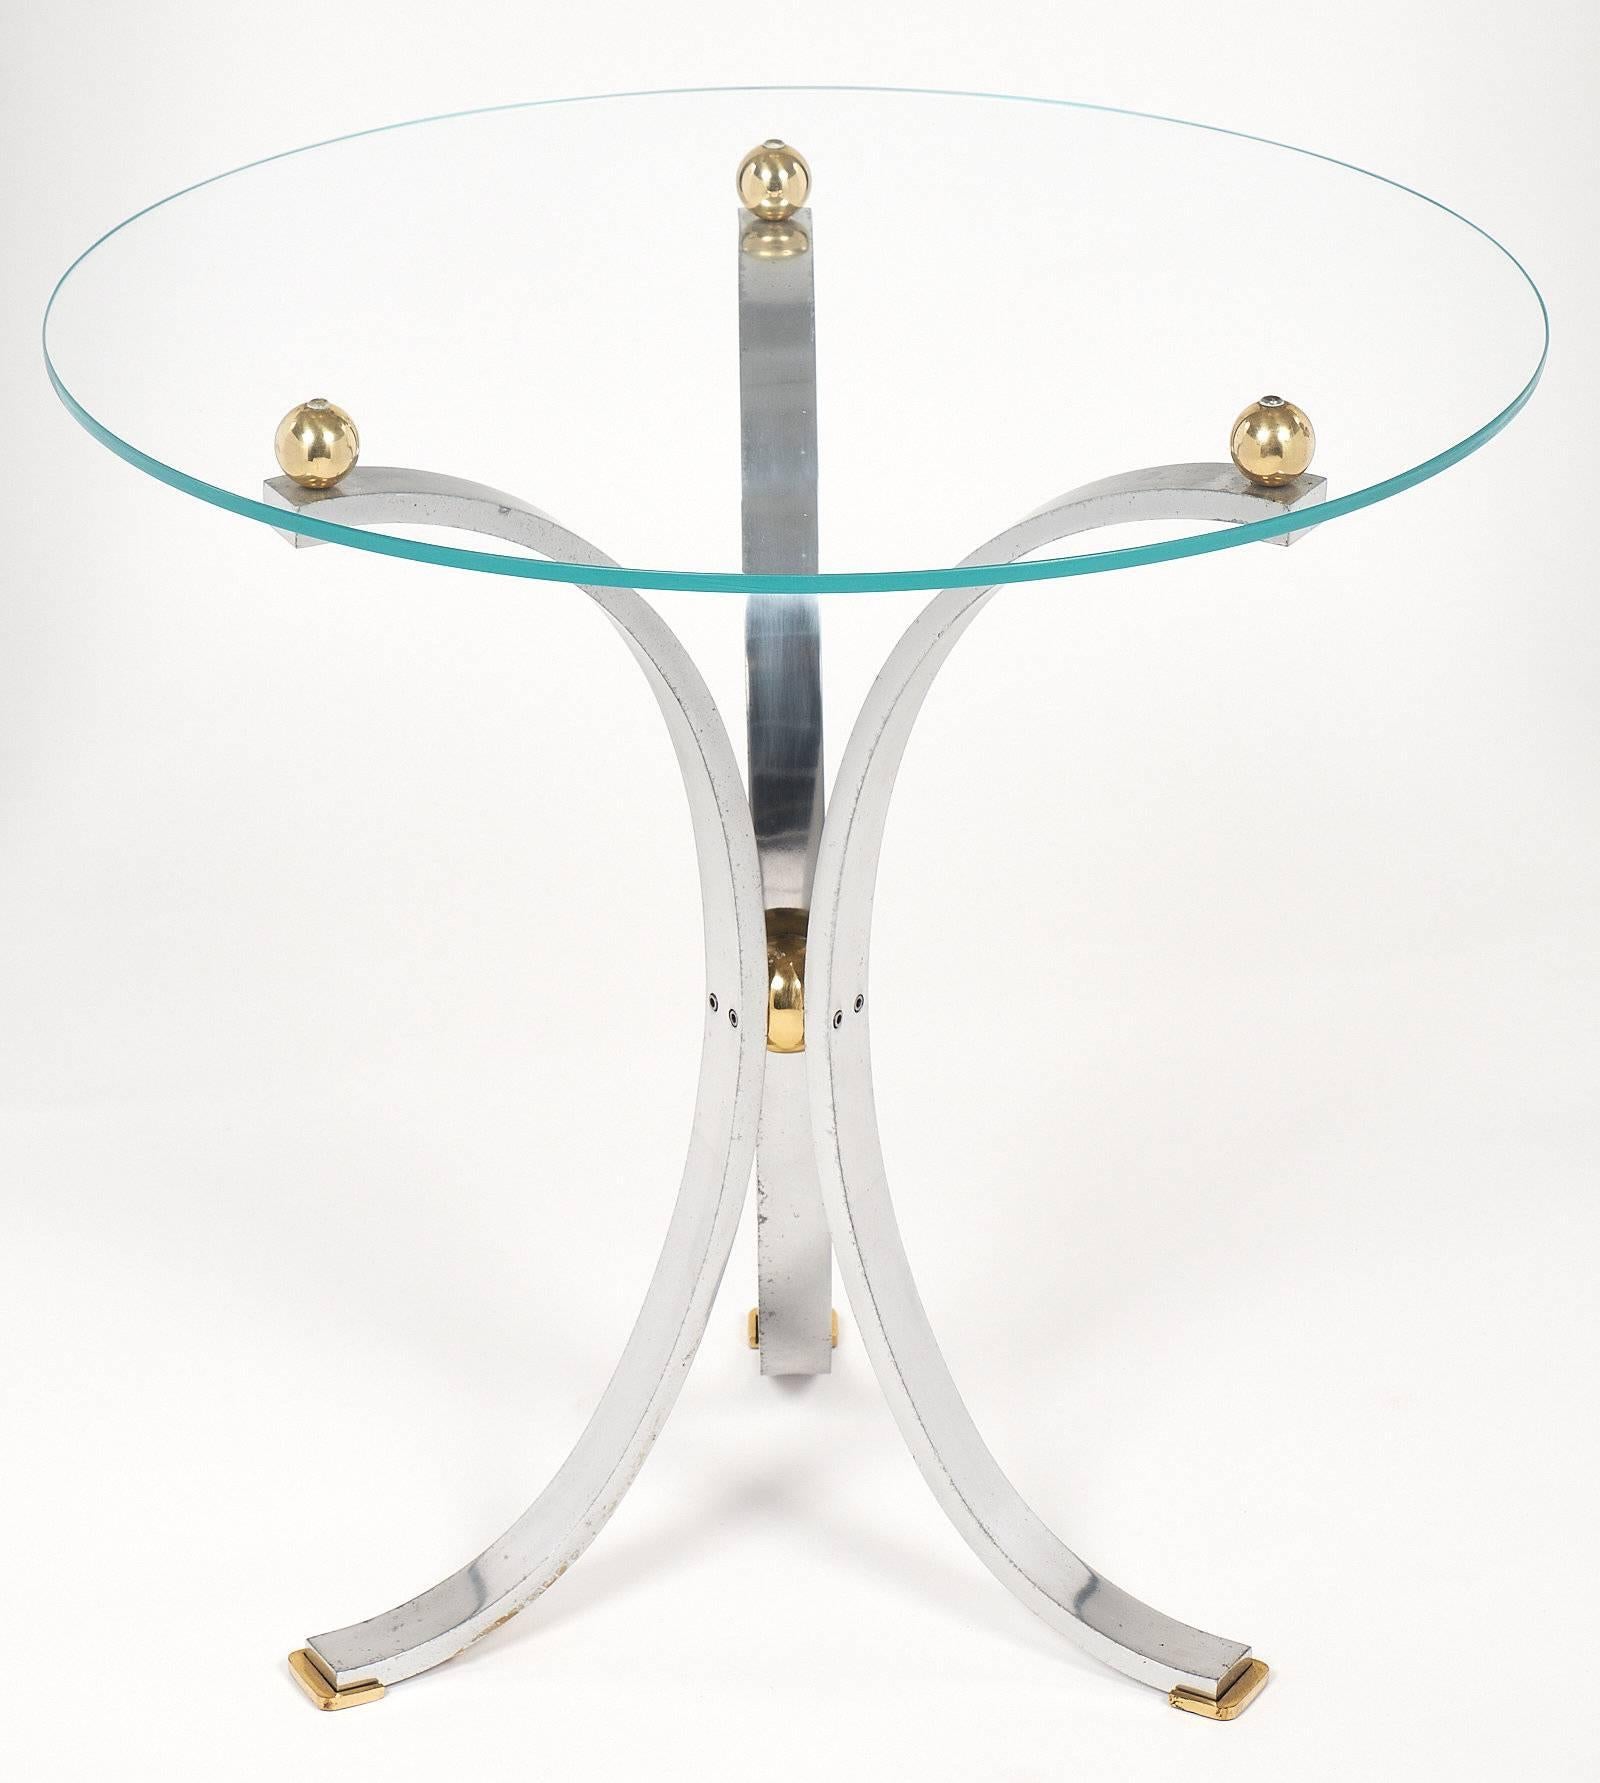 Table d'appoint chromée moderniste française avec une base tripode en forme de guéridon formée par trois arcs en acier chromé. La base est terminée par des pieds en laiton à leur base, et maintiennent le plateau en verre avec trois sphères en laiton